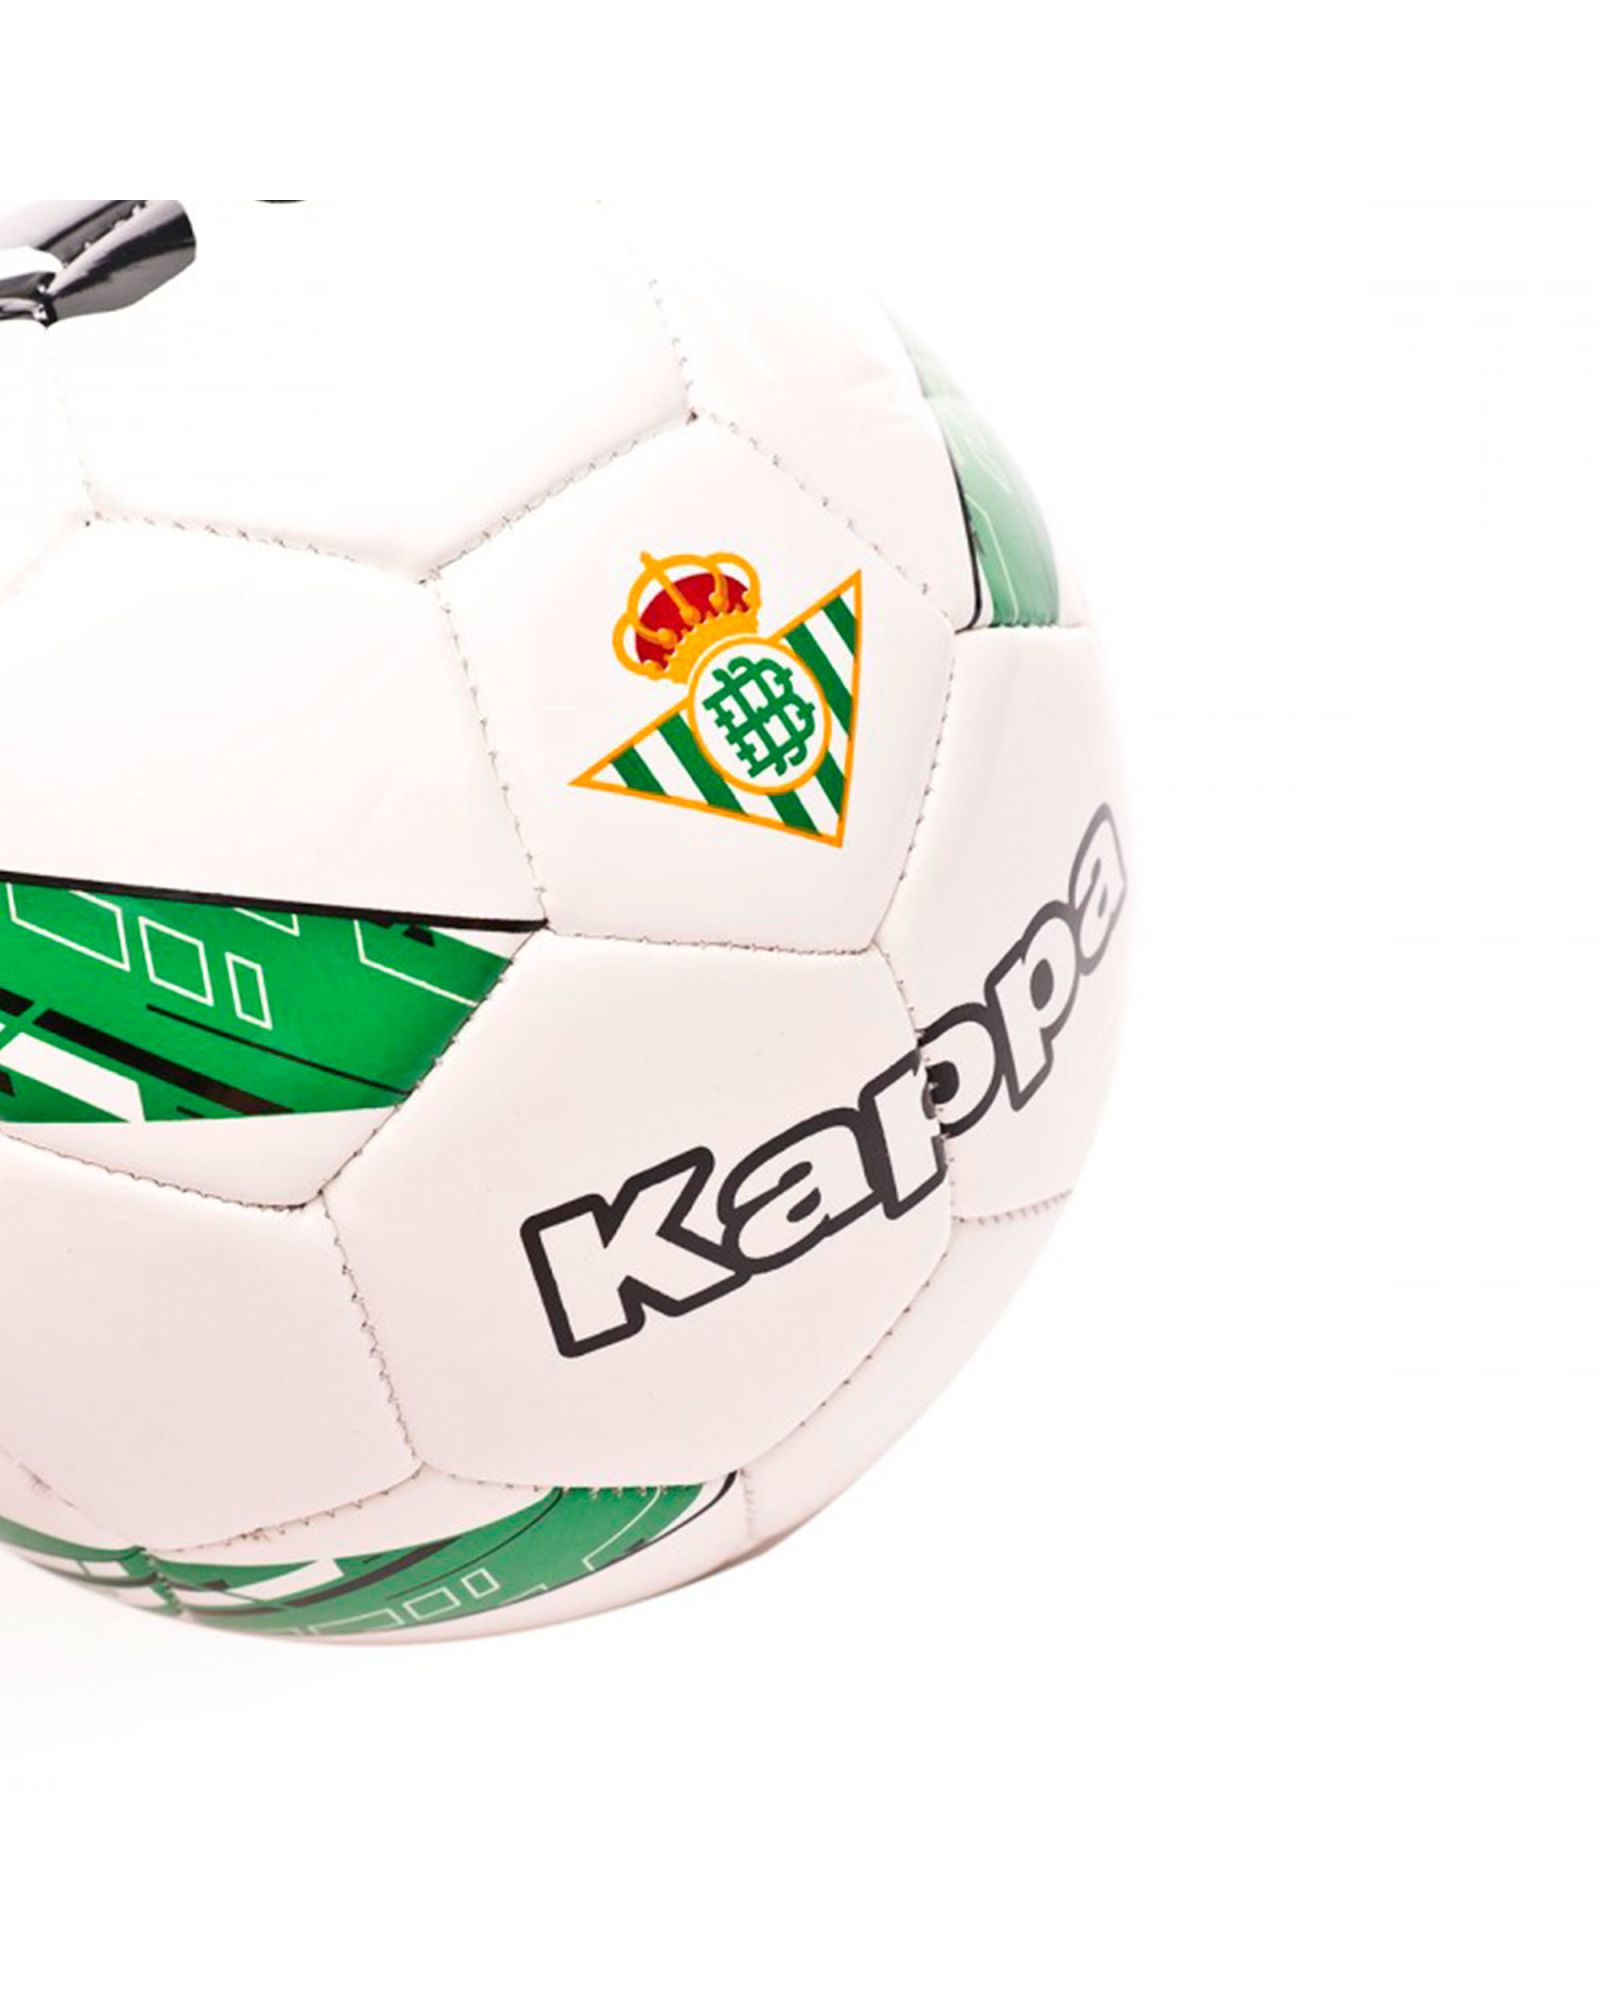 Balón de Fútbol 11 Real Betis 2019/2020 Player Blanco Verde - Fútbol Factory